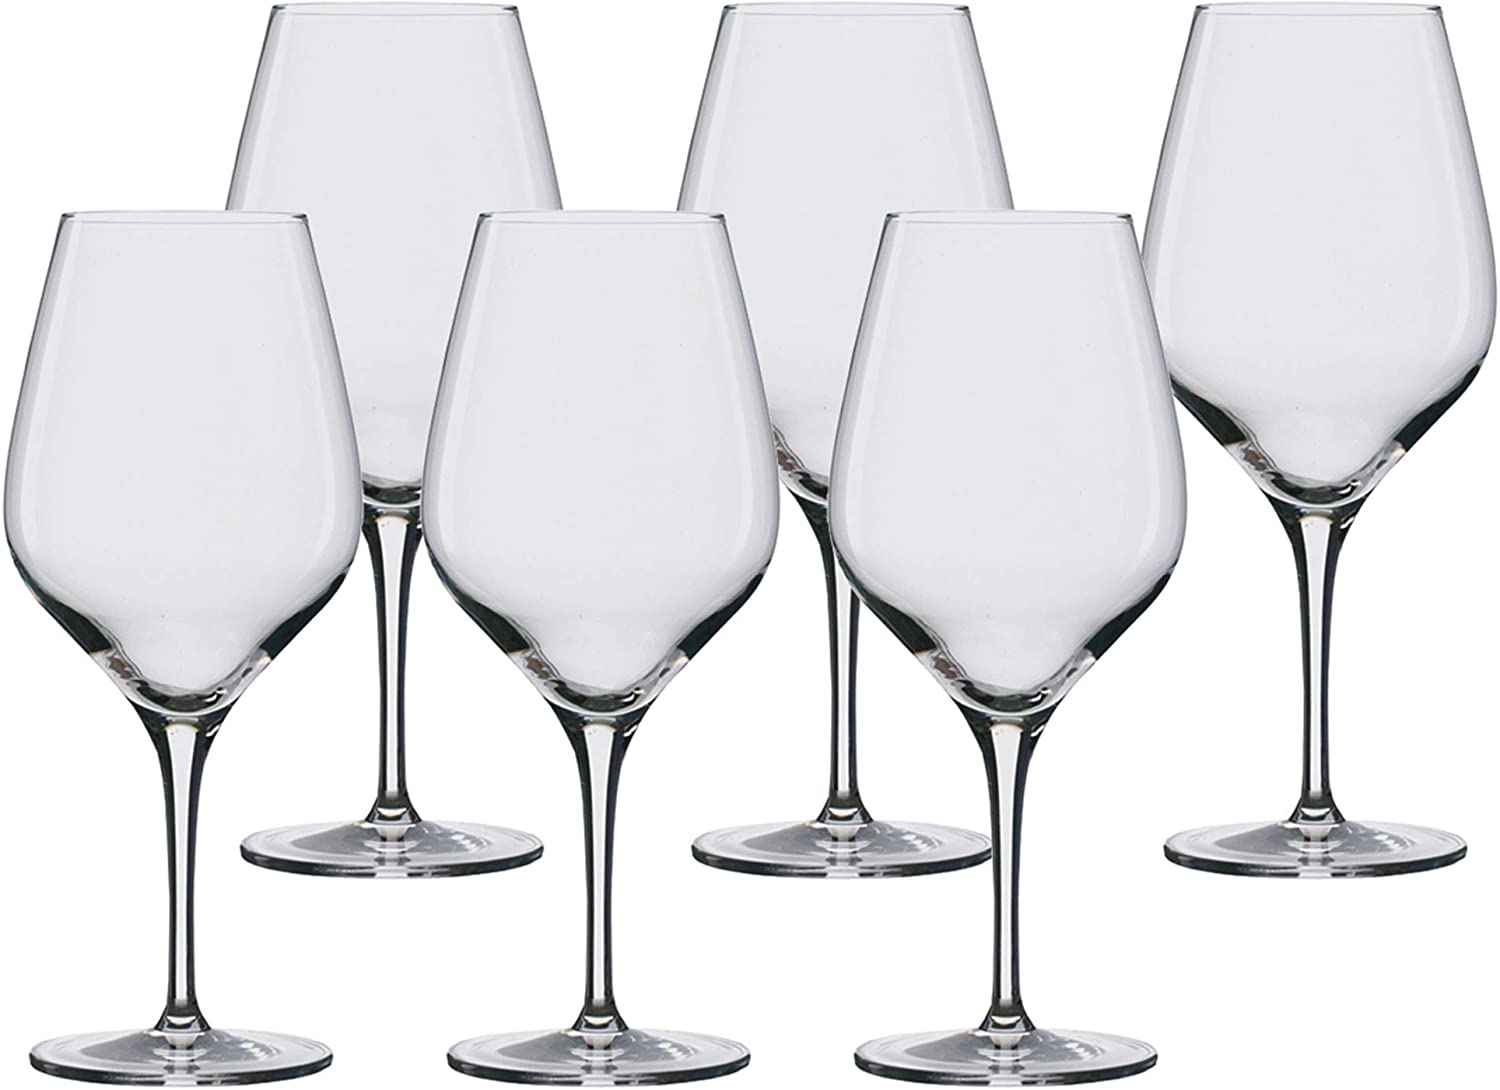 Stölzle Lausitz Exquisit Bordeaux Glasses, Set of 6